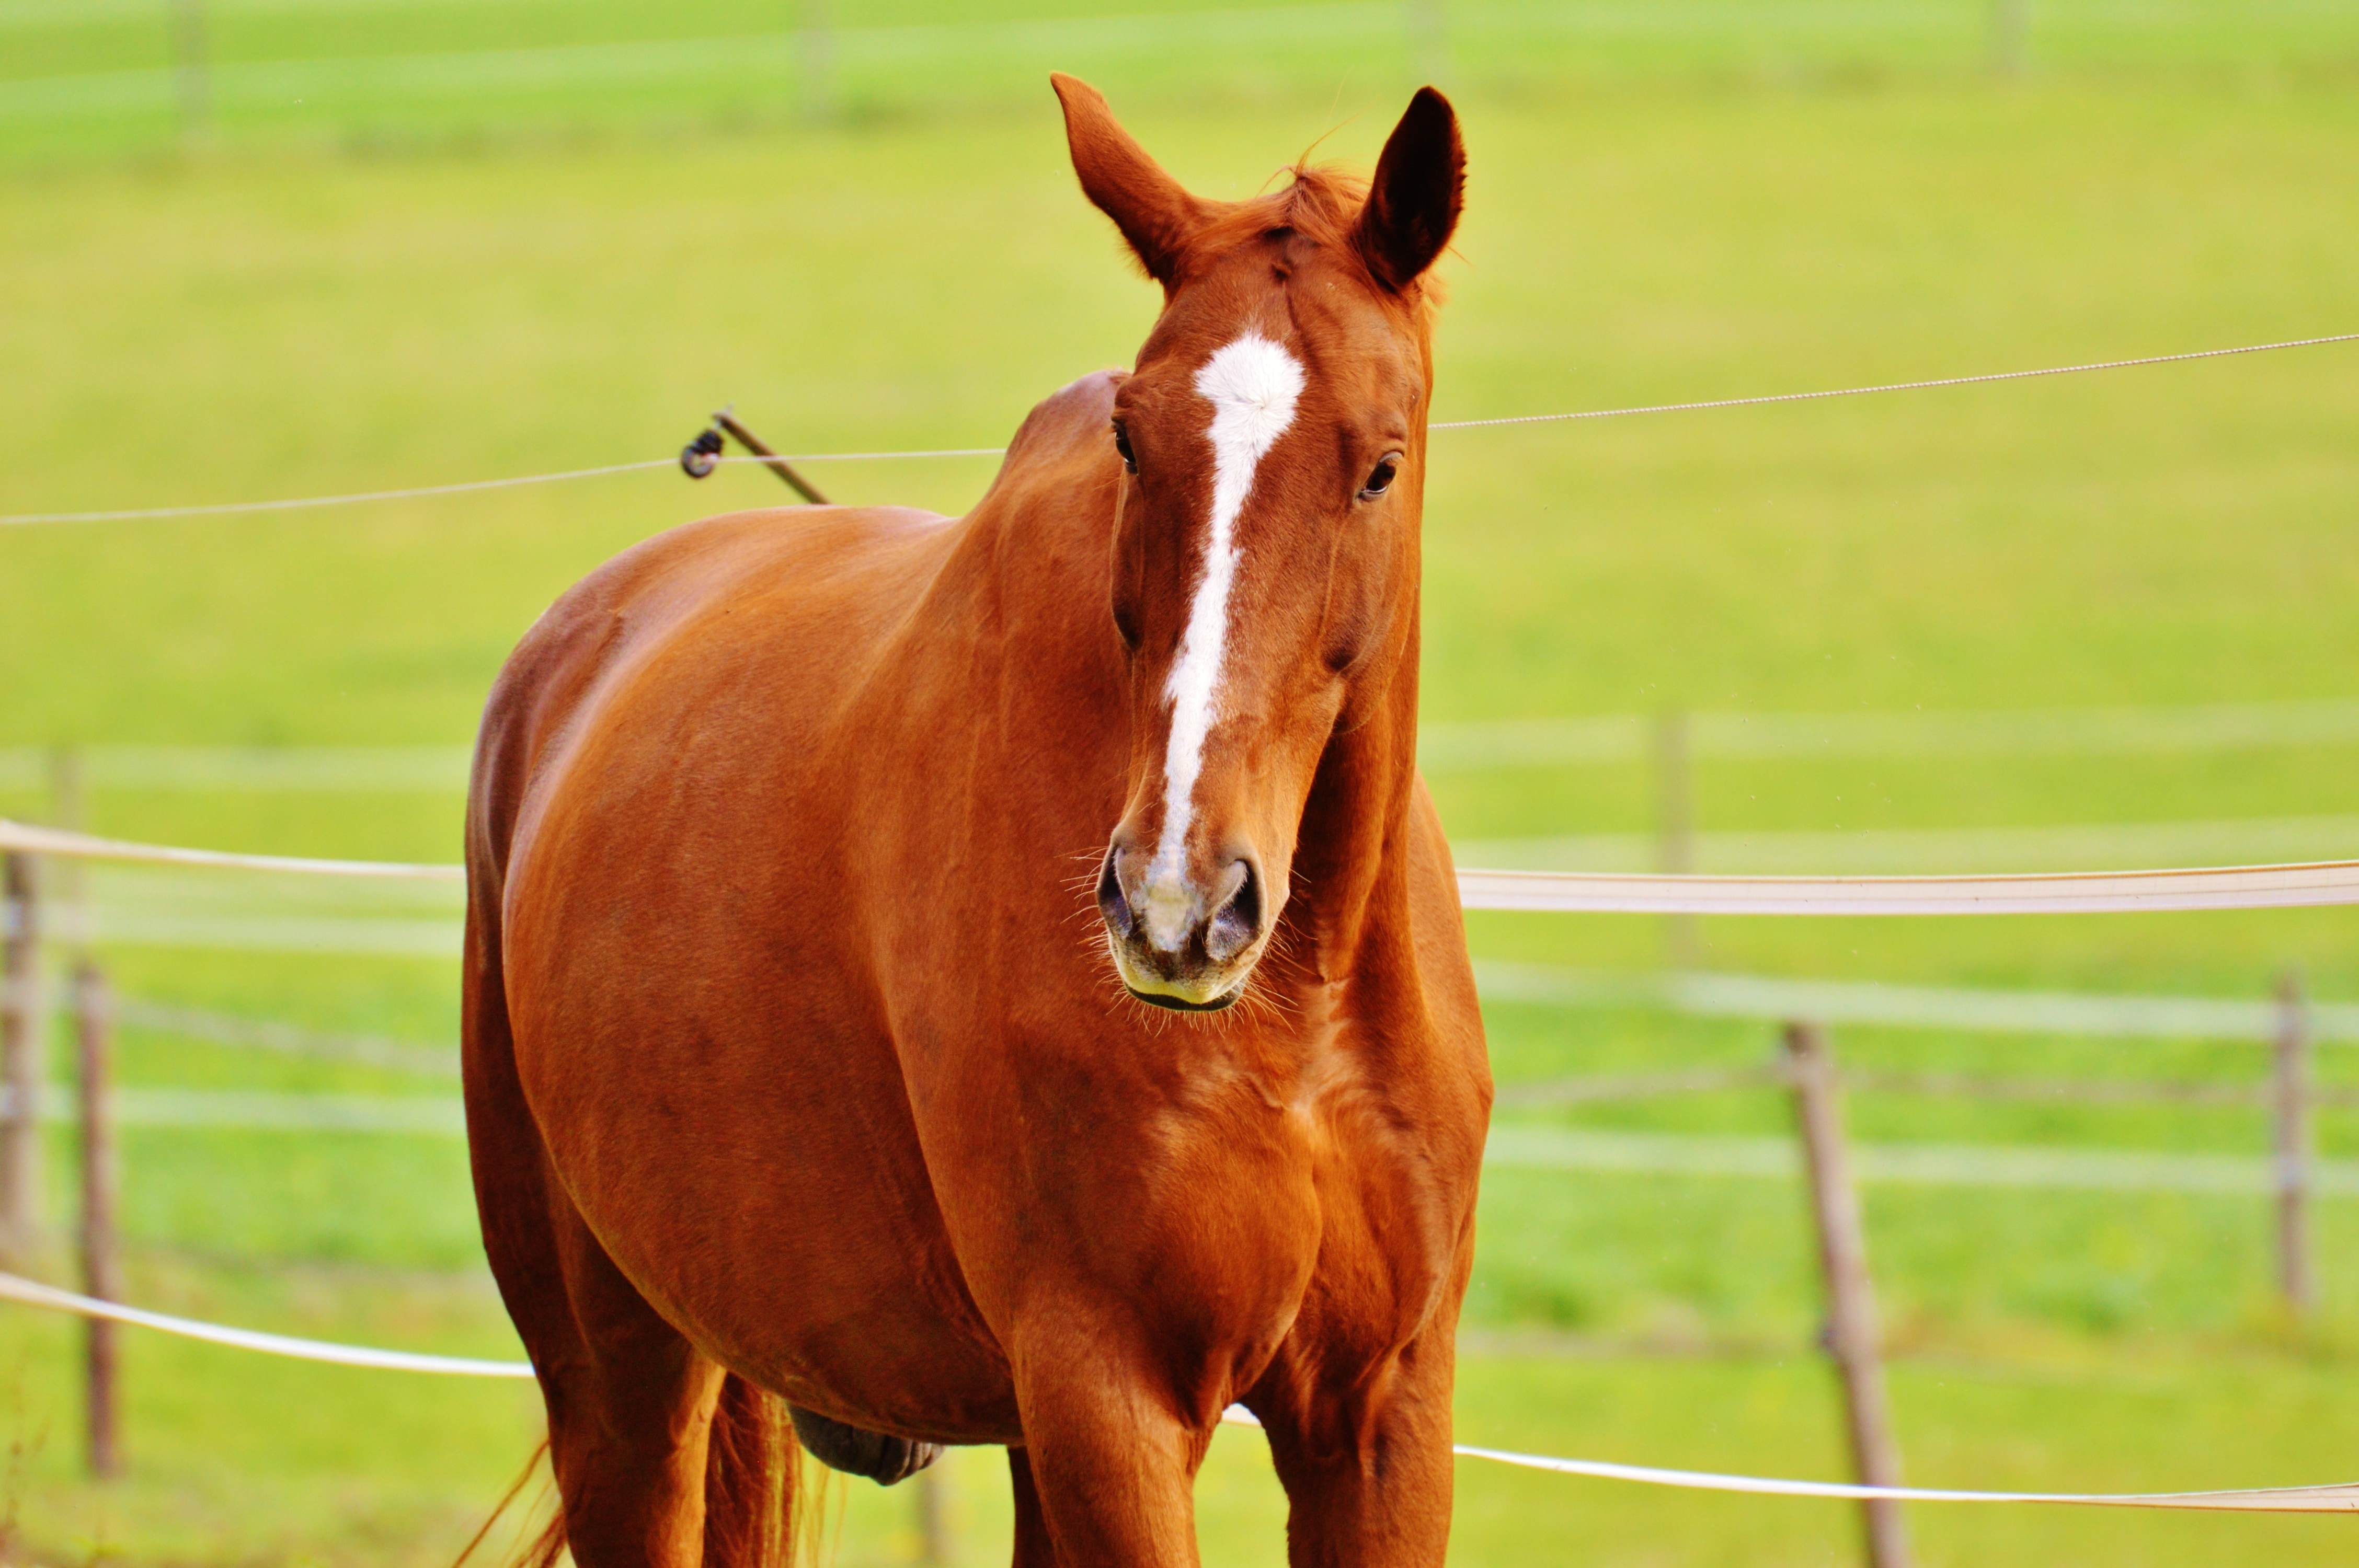 Animal ride. Домашние животные лошадь. Красная лошадь. Красный конь. Картинки домашних животных лошадь.